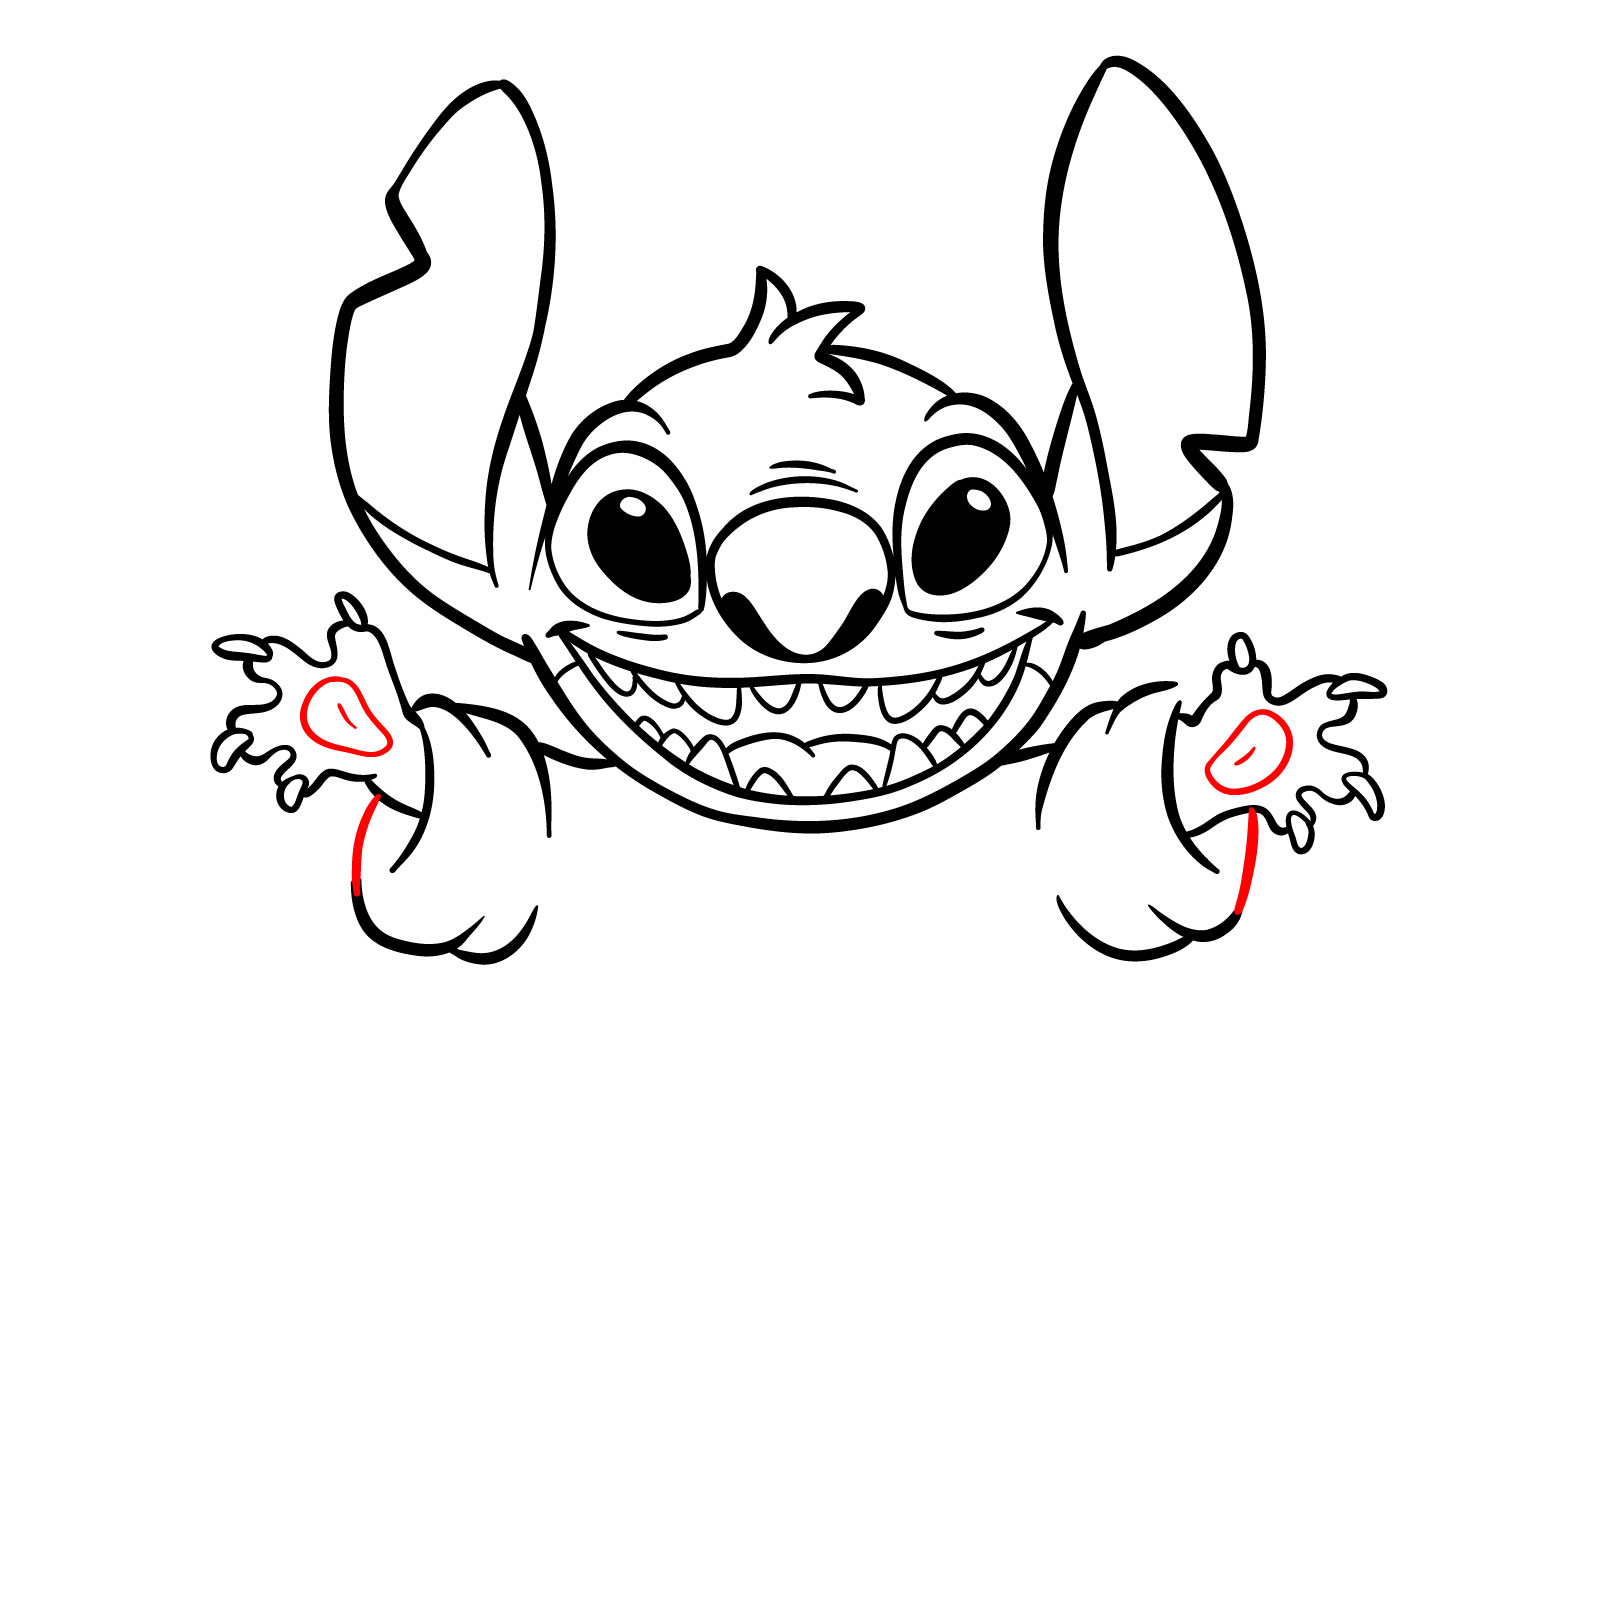 How to Draw Halloween Stitch with a jack-o'-lantern - step 19